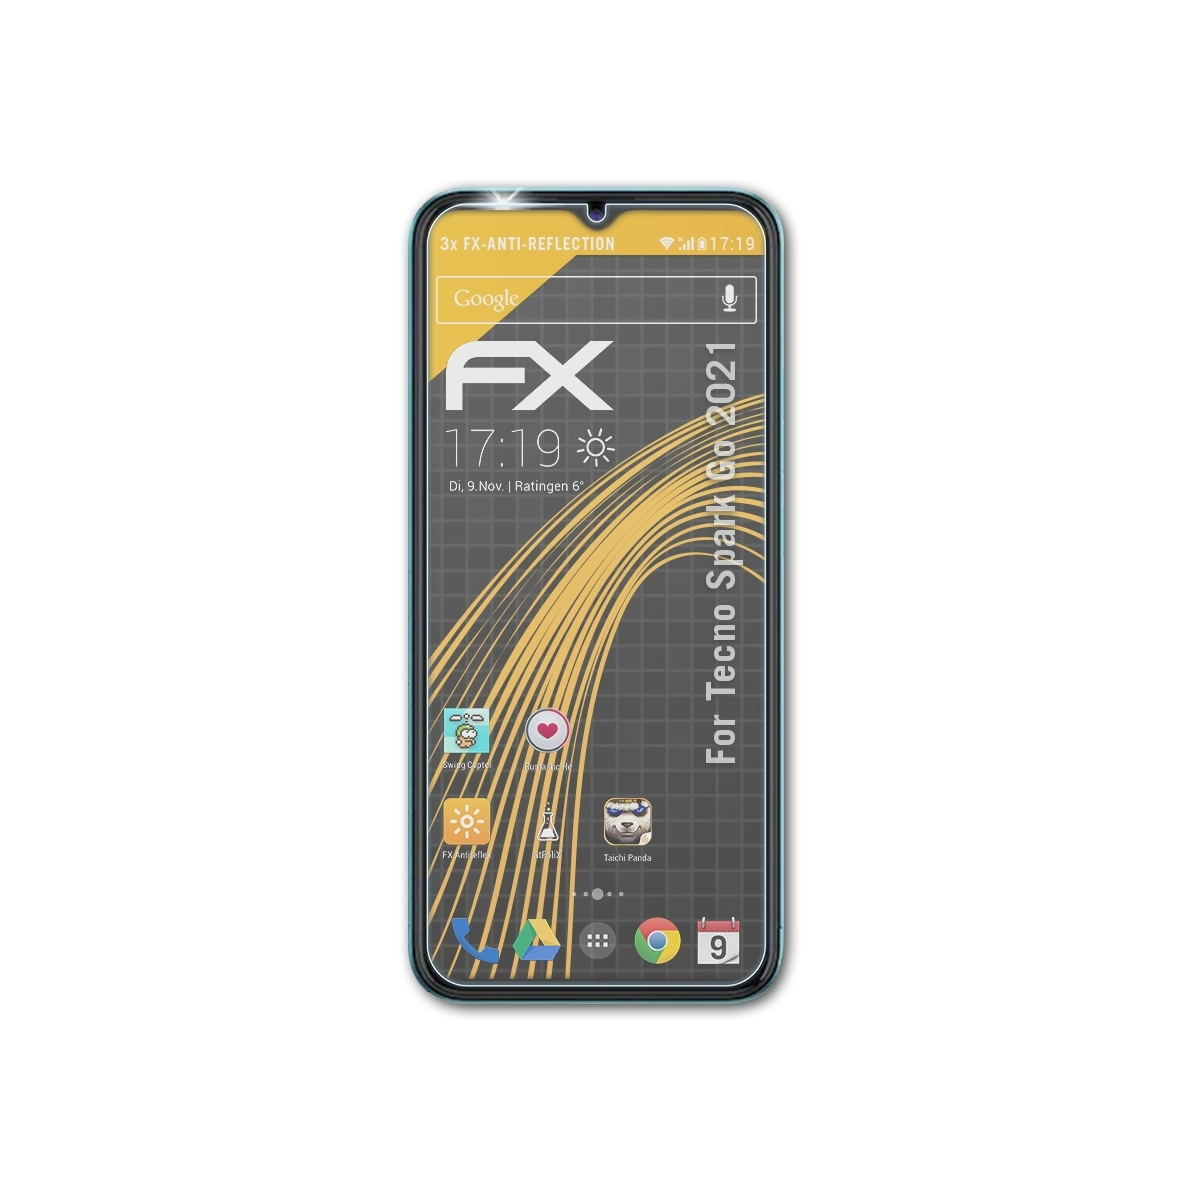 ATFOLIX 3x FX-Antireflex Displayschutz(für Spark Go Tecno (2021))